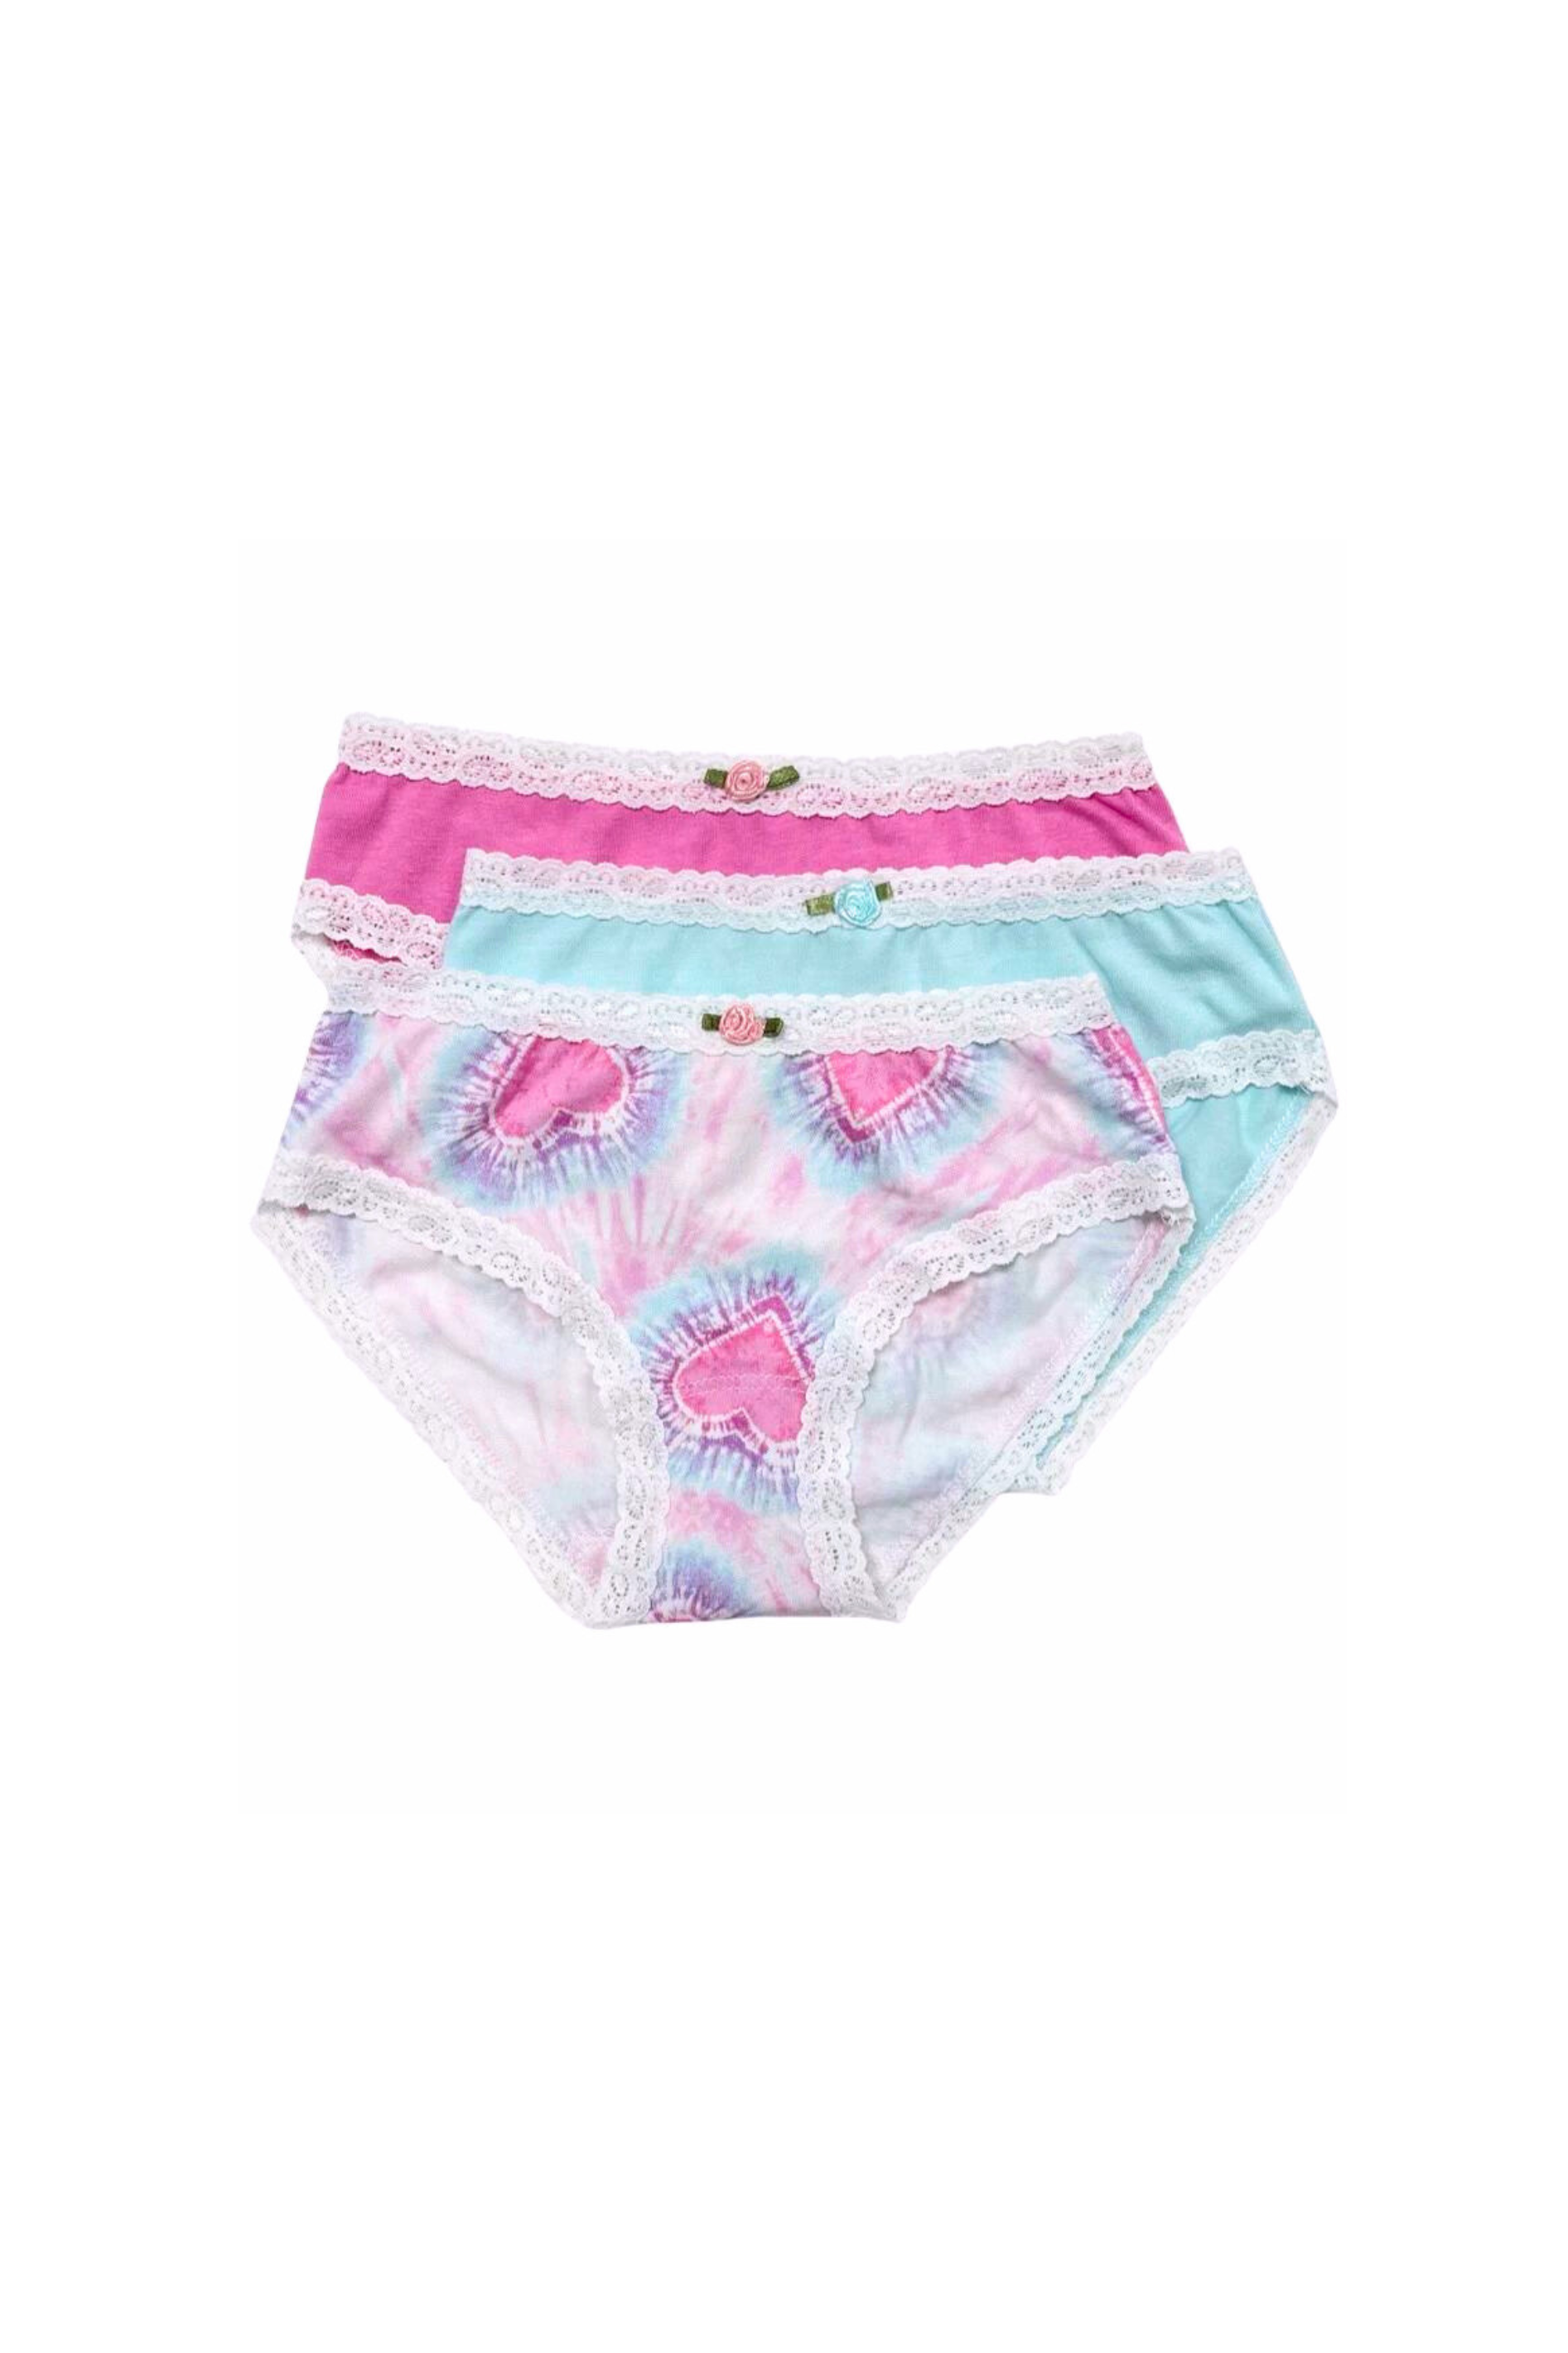 Esme - Hearts Panty Set (3 Pack) 7-16 Girls Underwear – Dottie